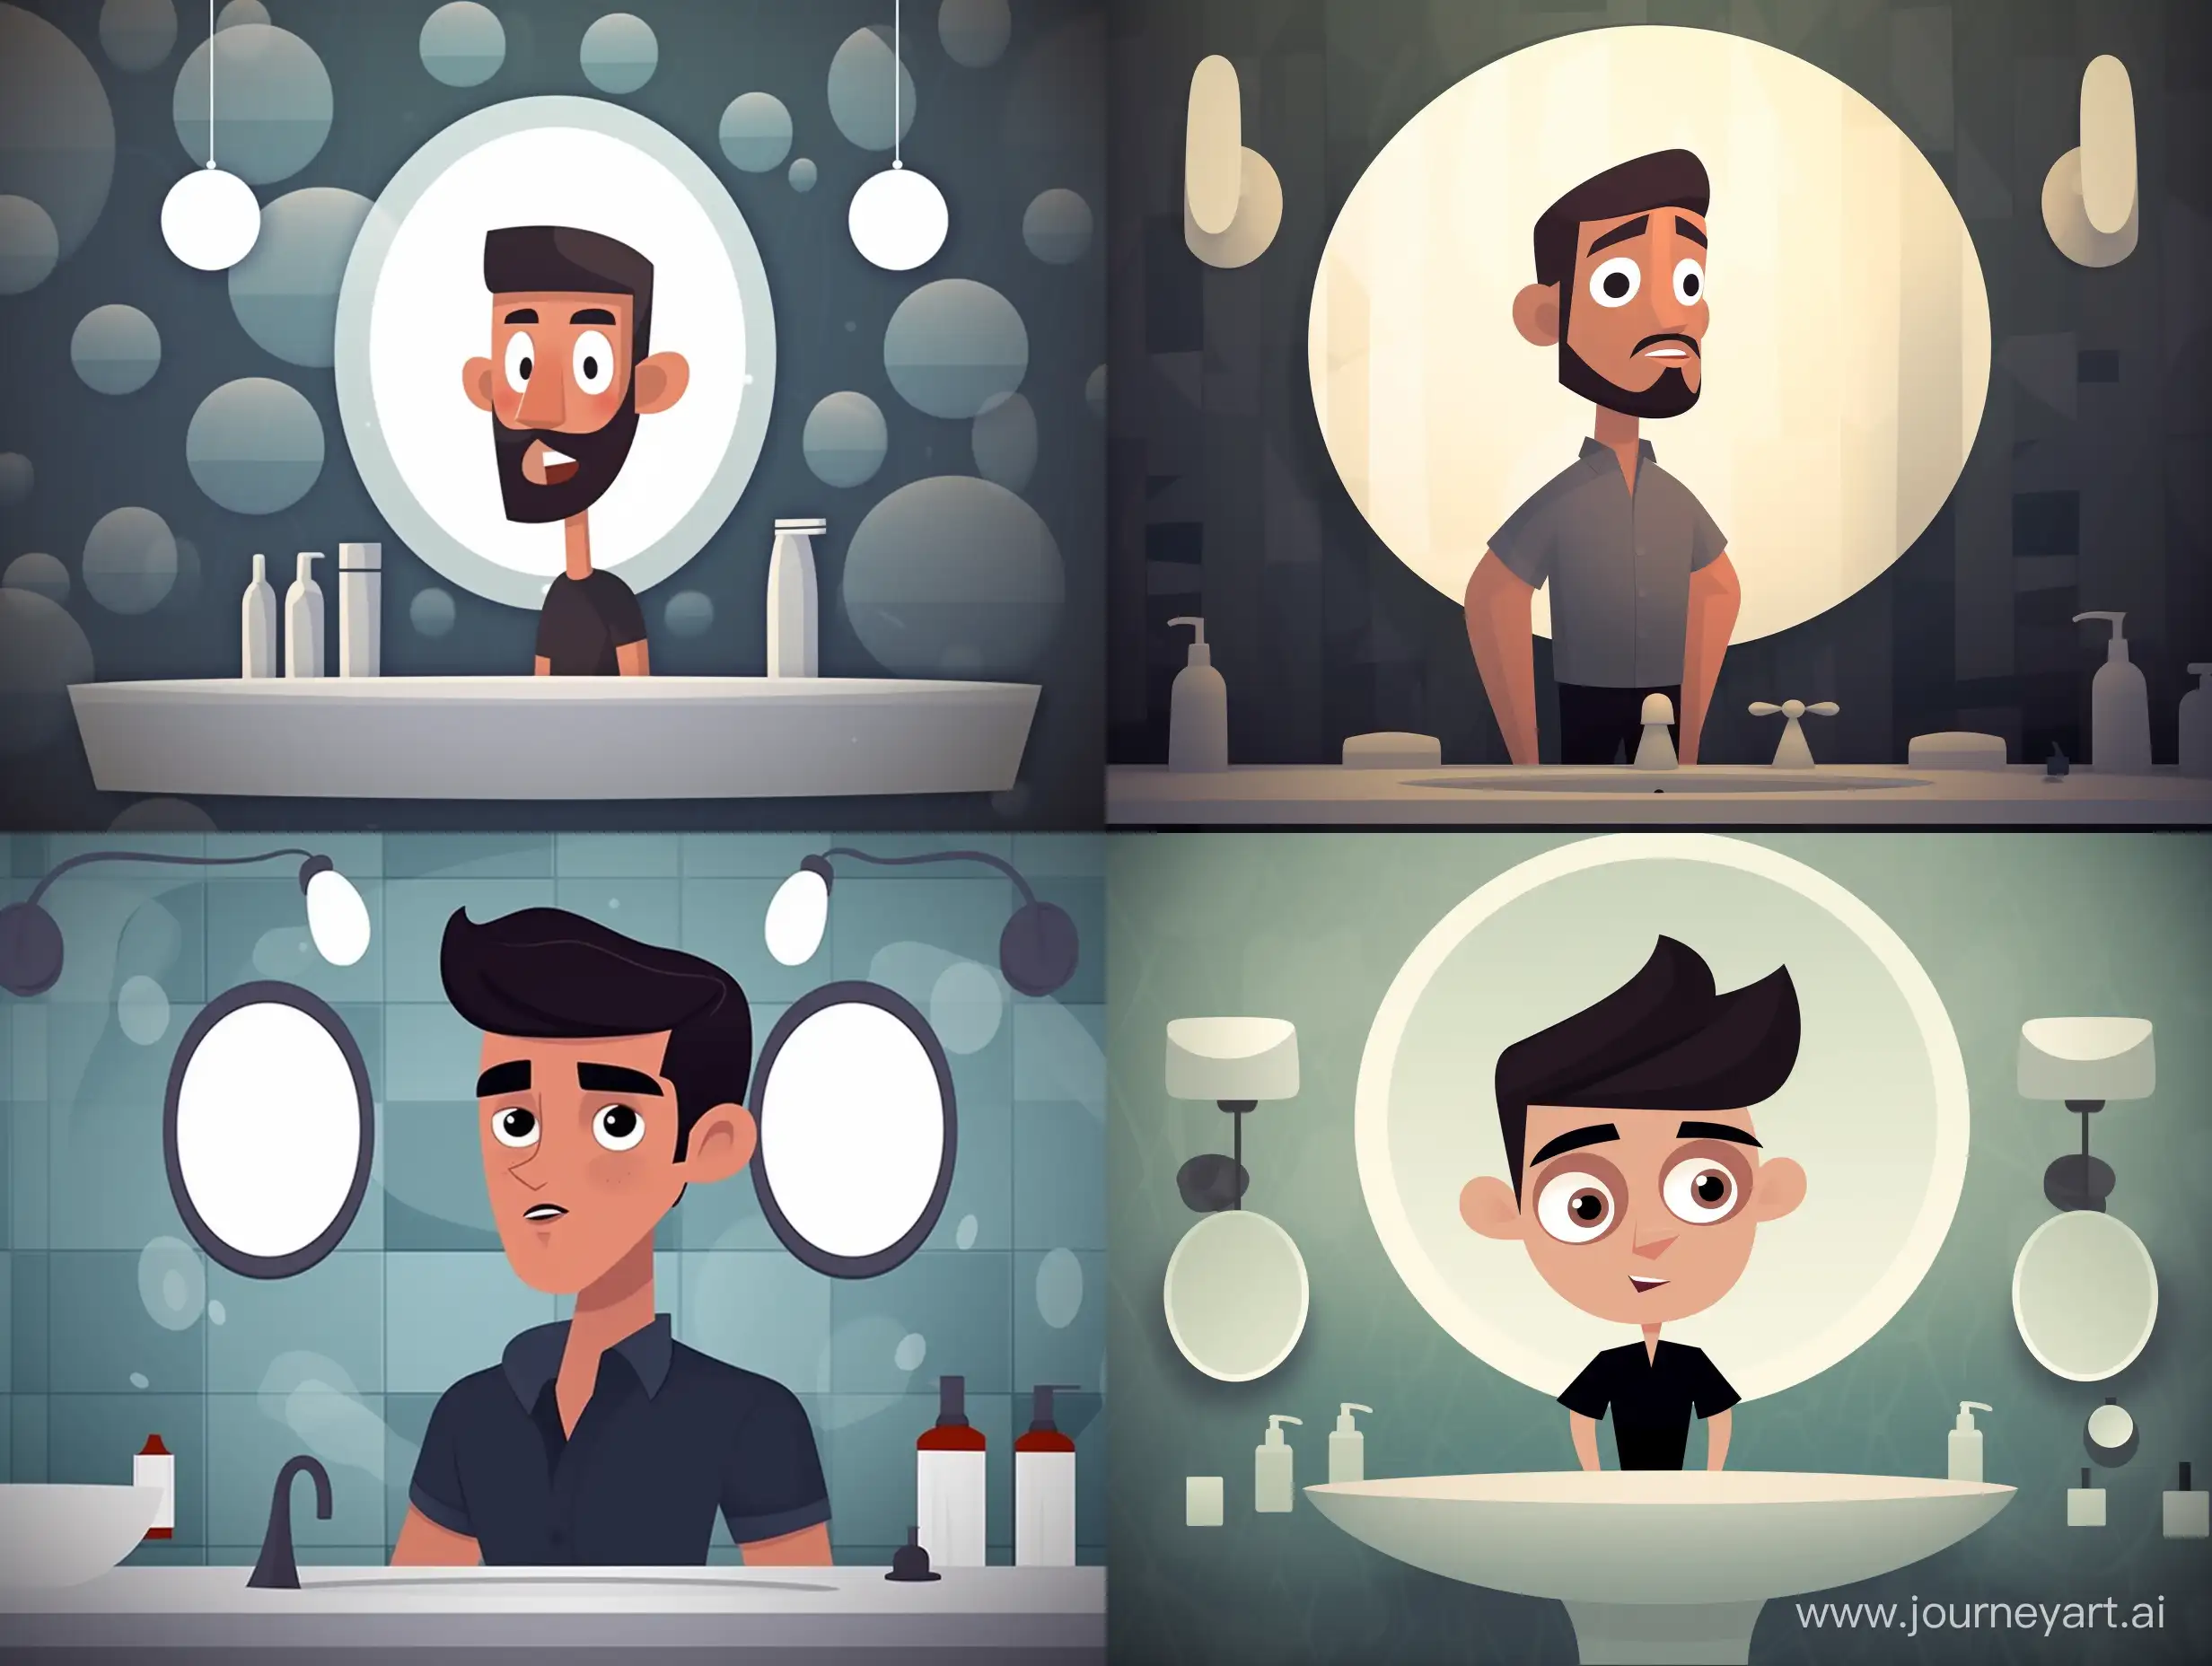 Cartoon pixar style of a красивый парень в ванной стоит перед зеркалом. Фон будто в пузырях ванны